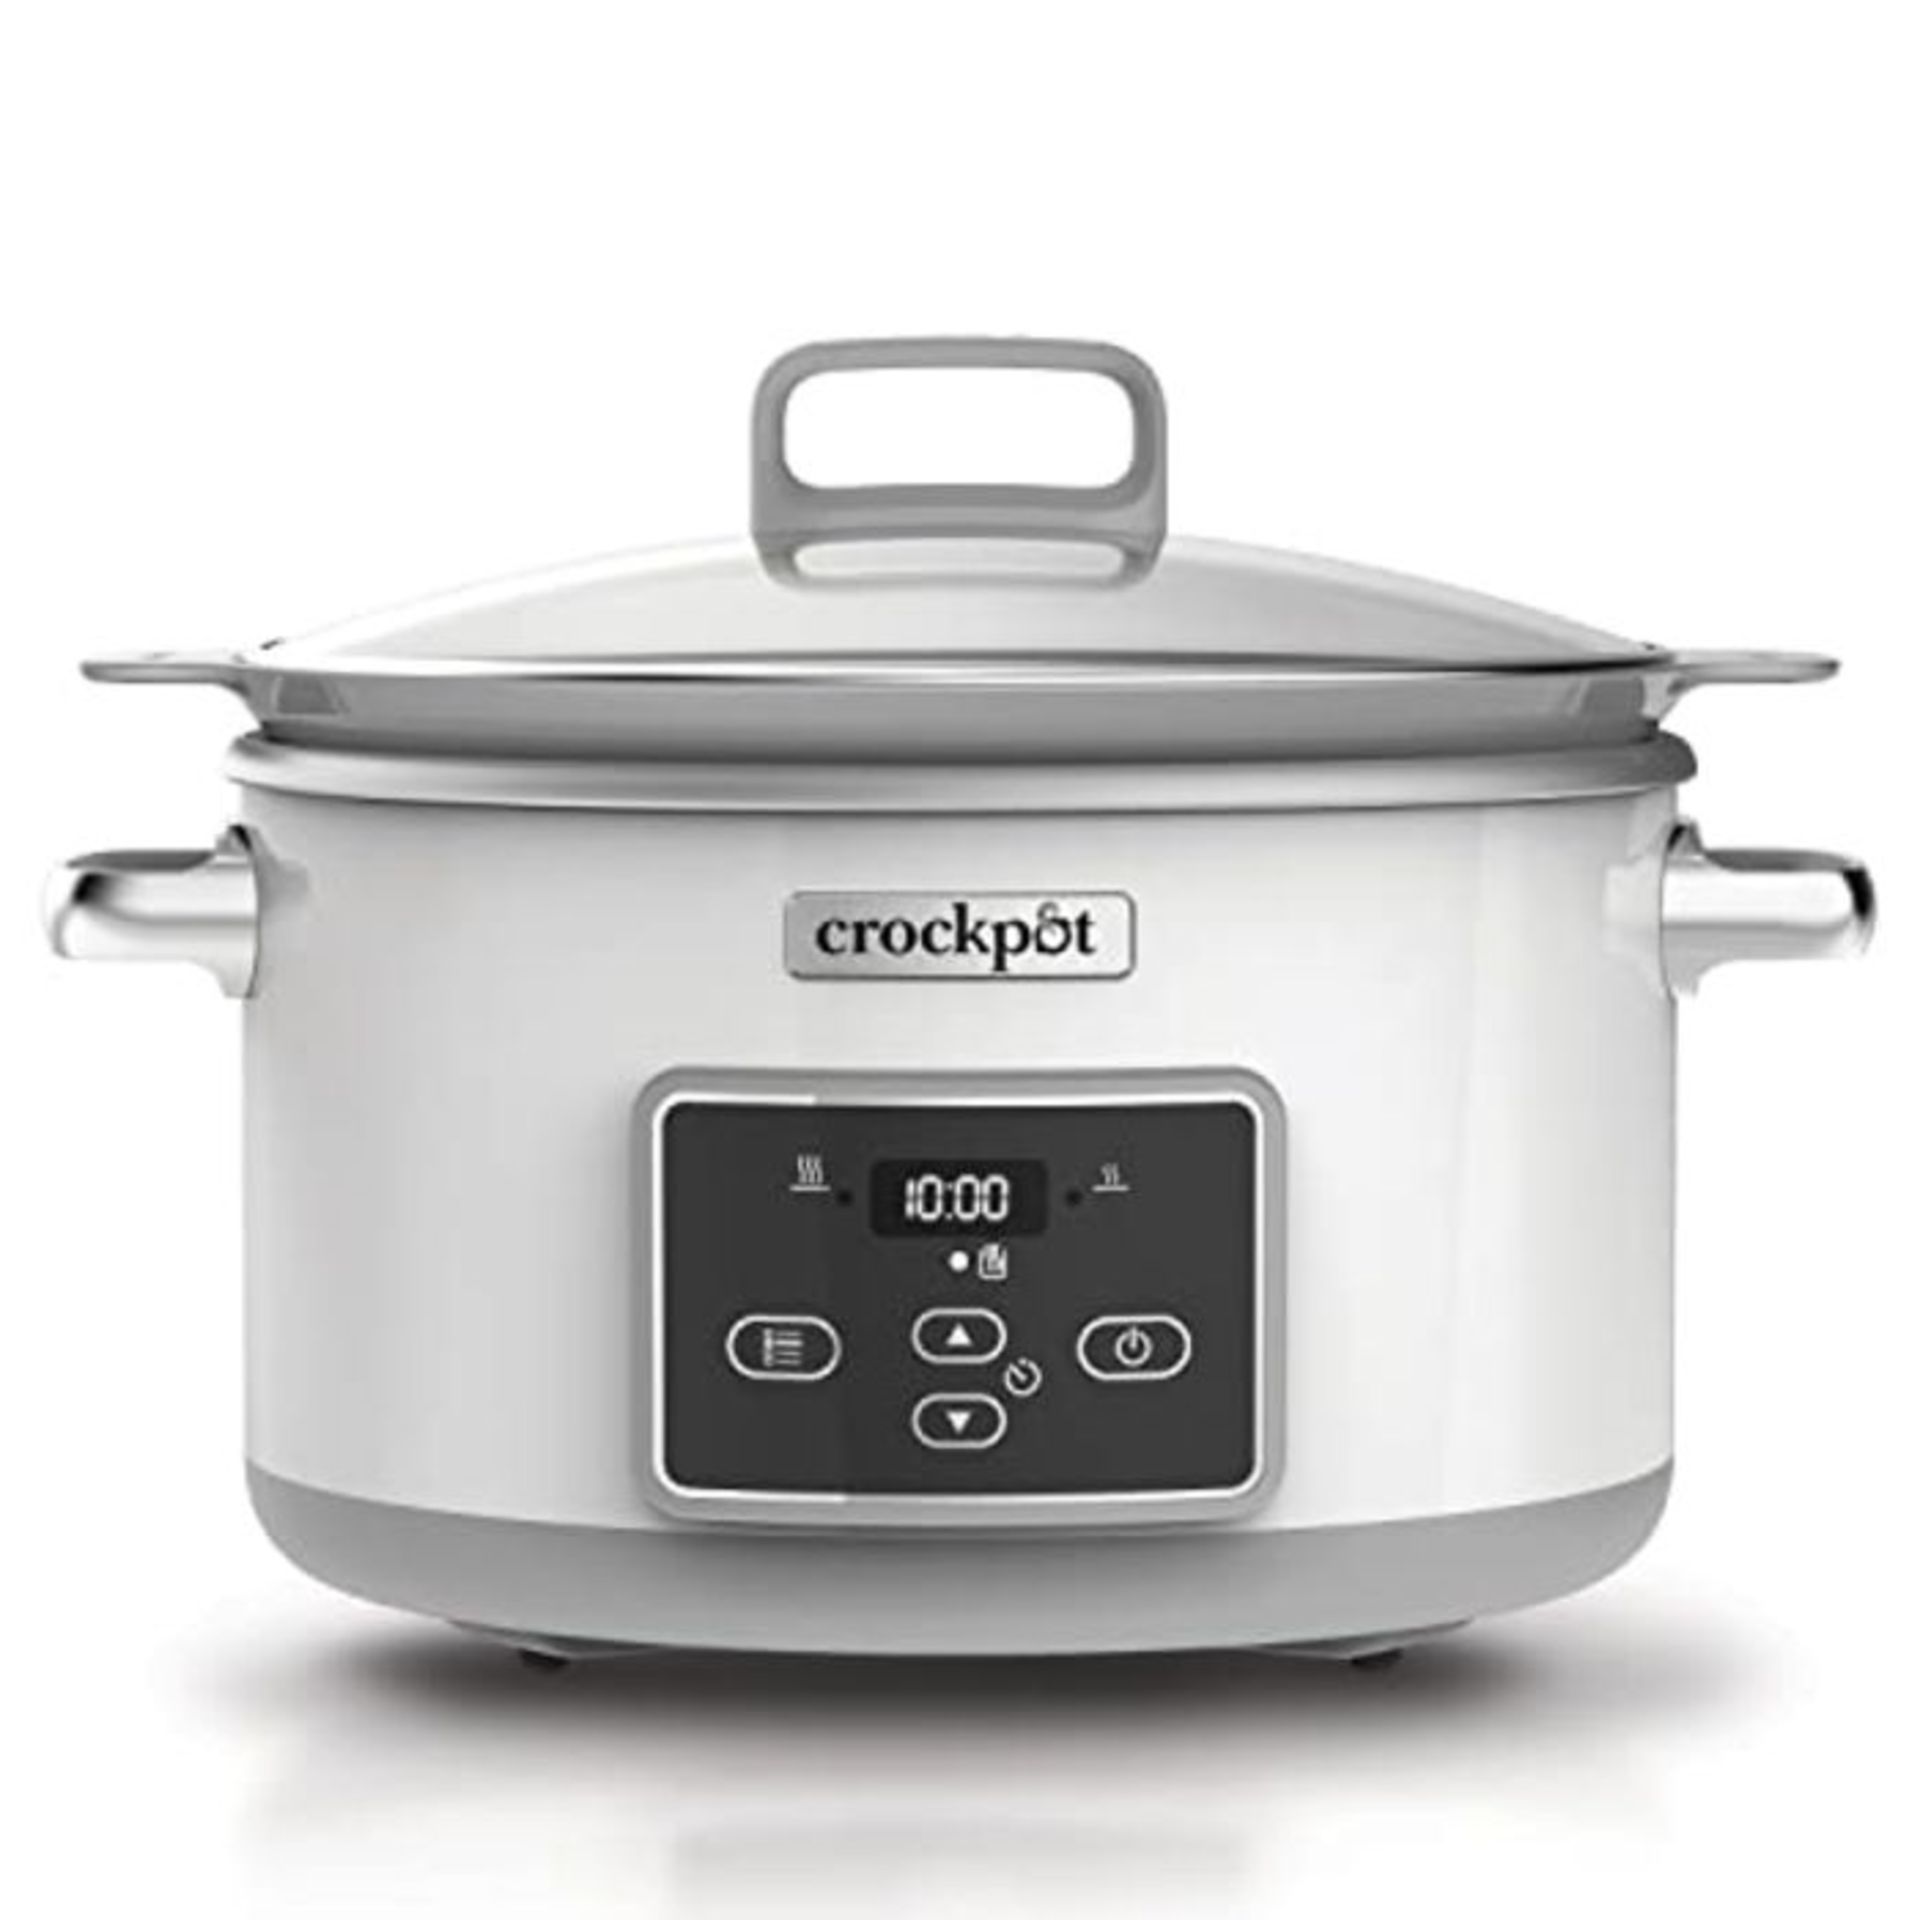 RRP £119.00 Crockpot DuraCeramic Digital Saute Slow Cooker with Hob-Safe Pot | Digital Timer | Ant